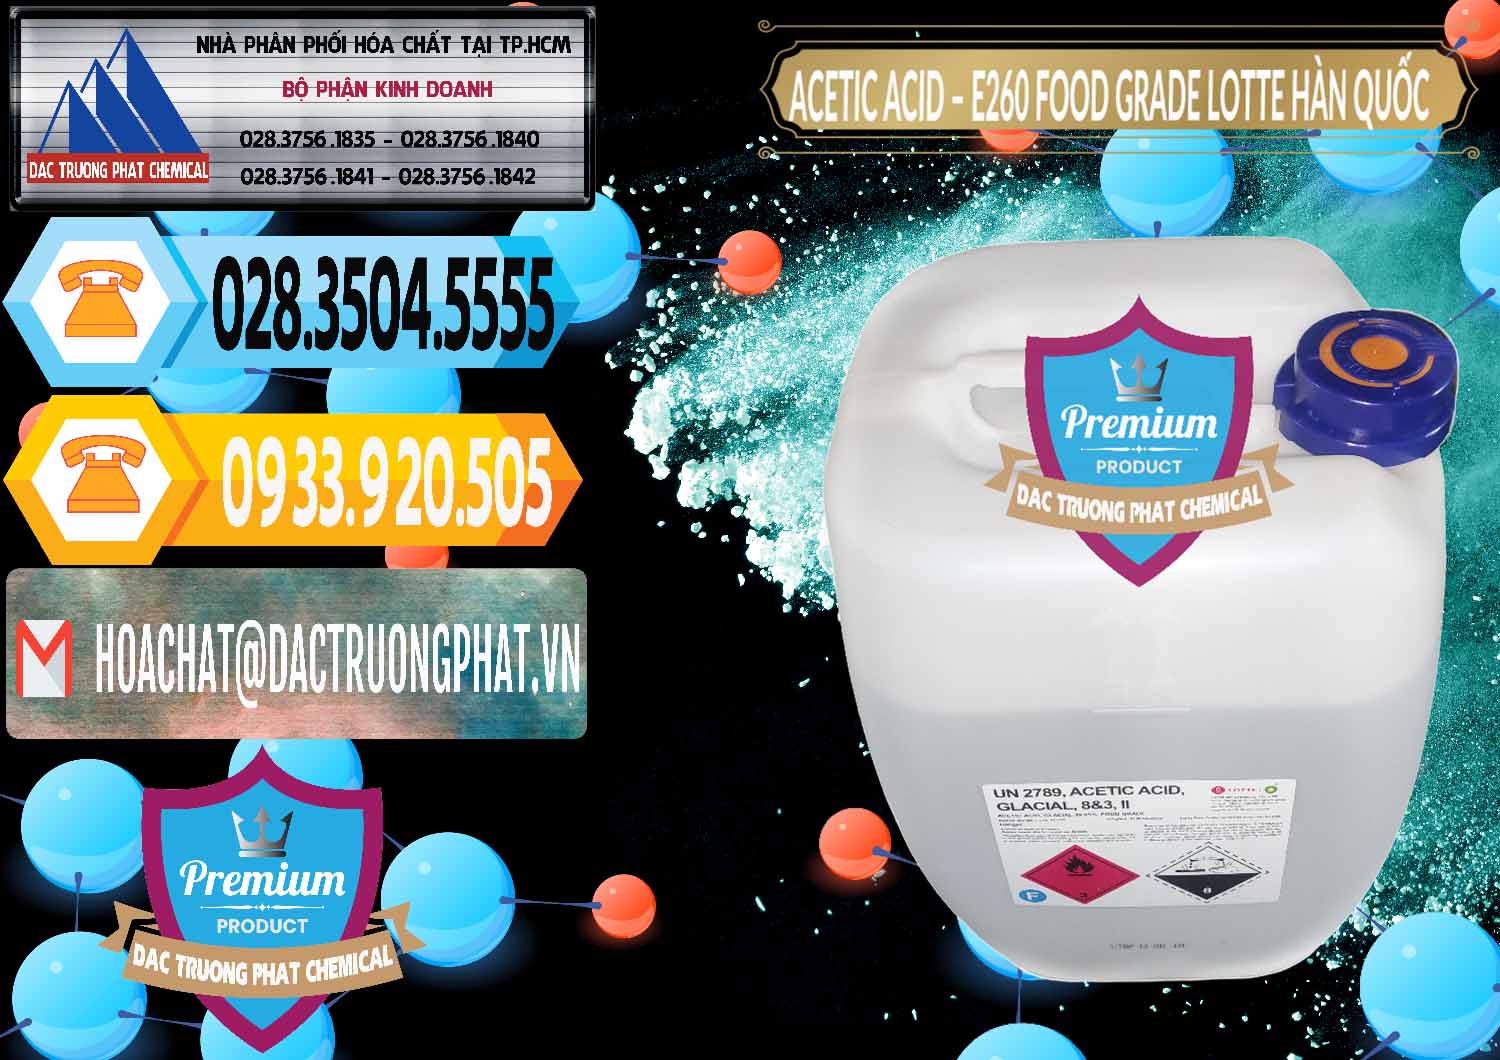 Nhập khẩu ( bán ) Acetic Acid – Axit Acetic E260 Food Grade Hàn Quốc Lotte Korea - 0003 - Nhà cung cấp ( phân phối ) hóa chất tại TP.HCM - hoachattayrua.net